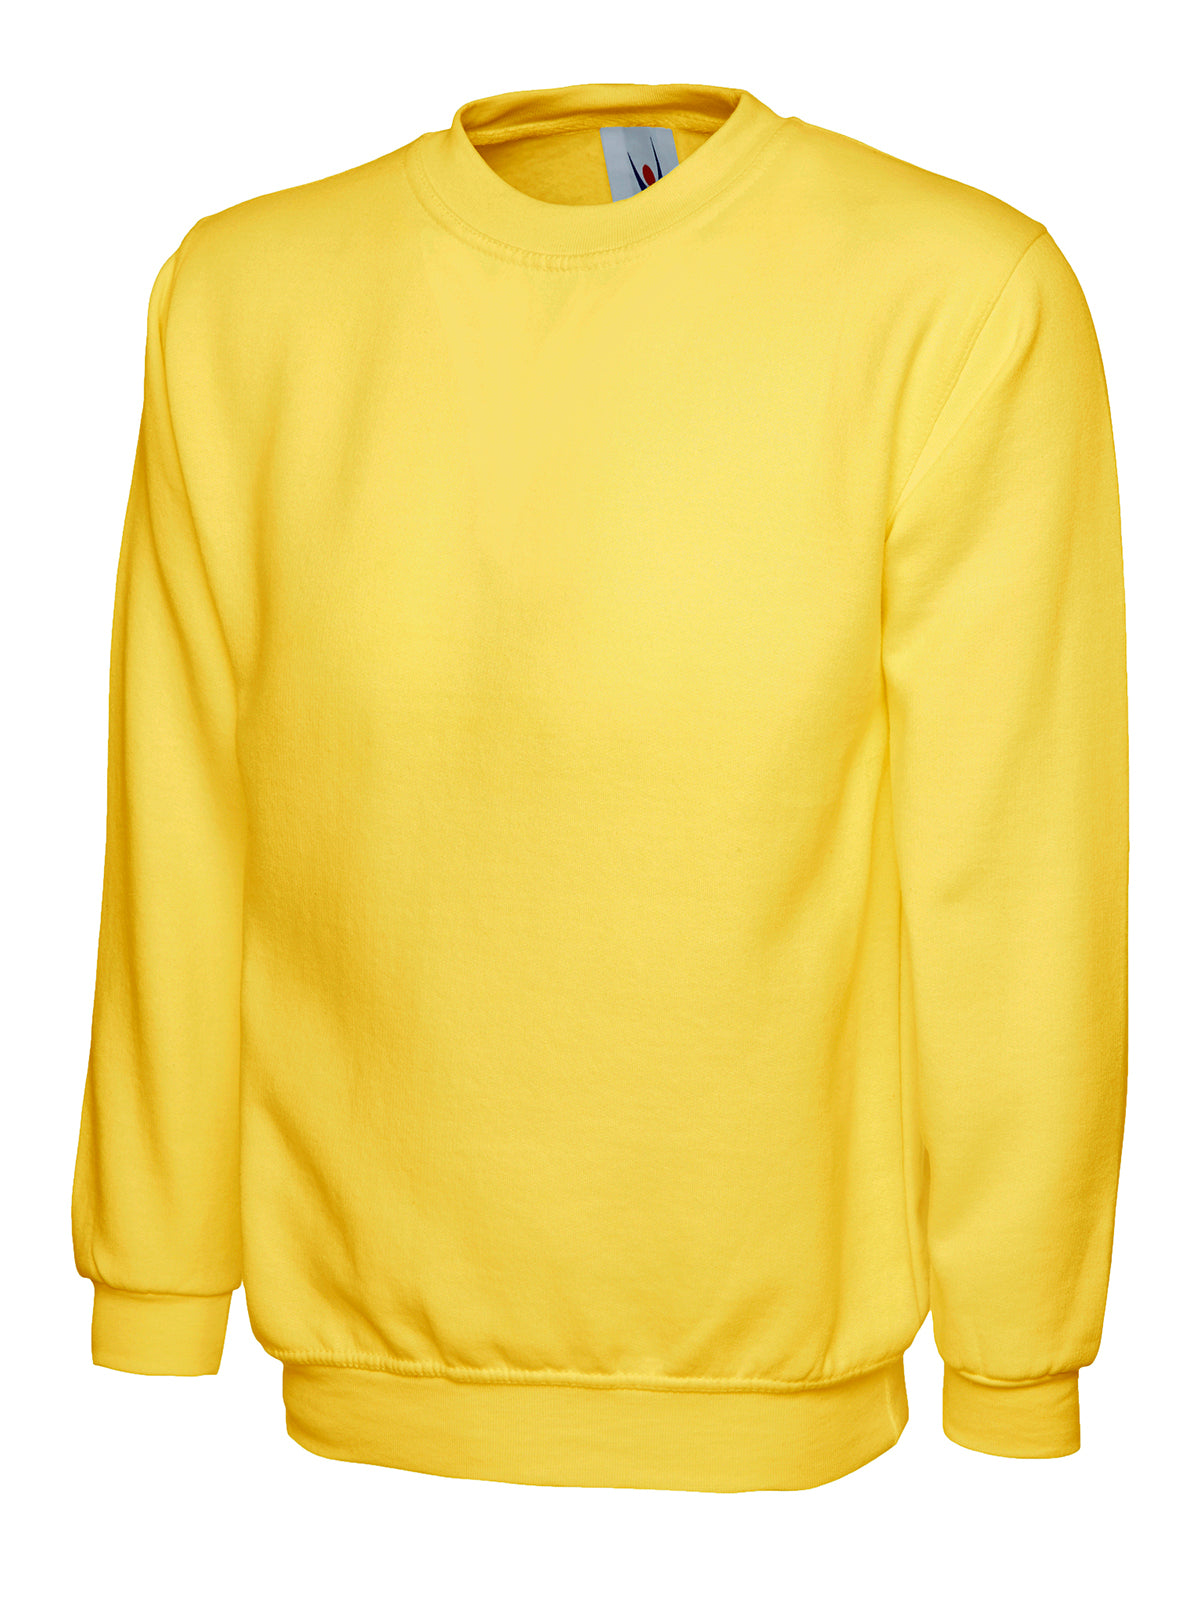 Uneek Classic Sweatshirt - Yellow